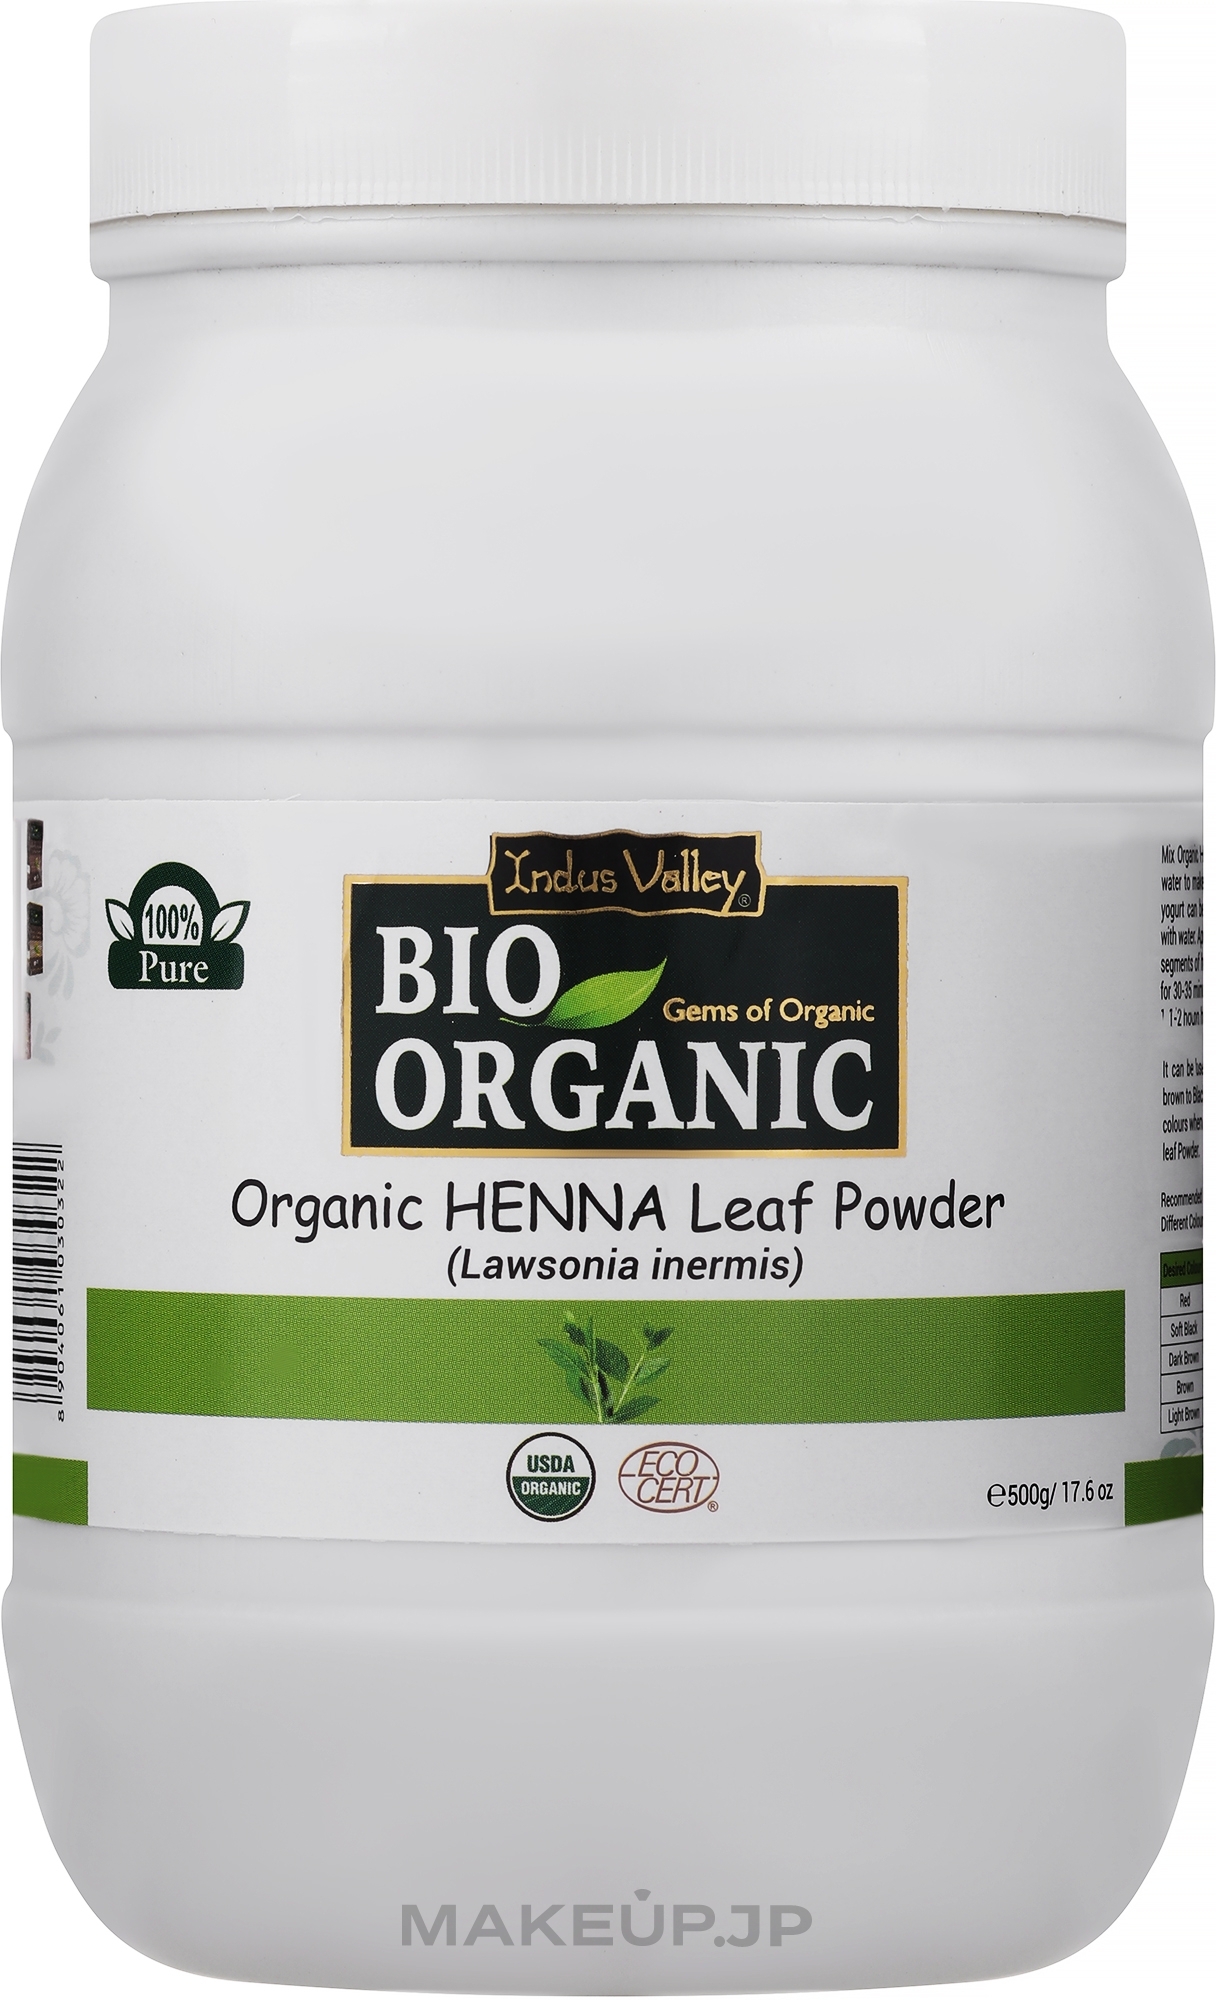 Hair Coloring Henna Leaf Powder - Indus Valley Bio Organic Henna Leaf Powder — photo 500 g